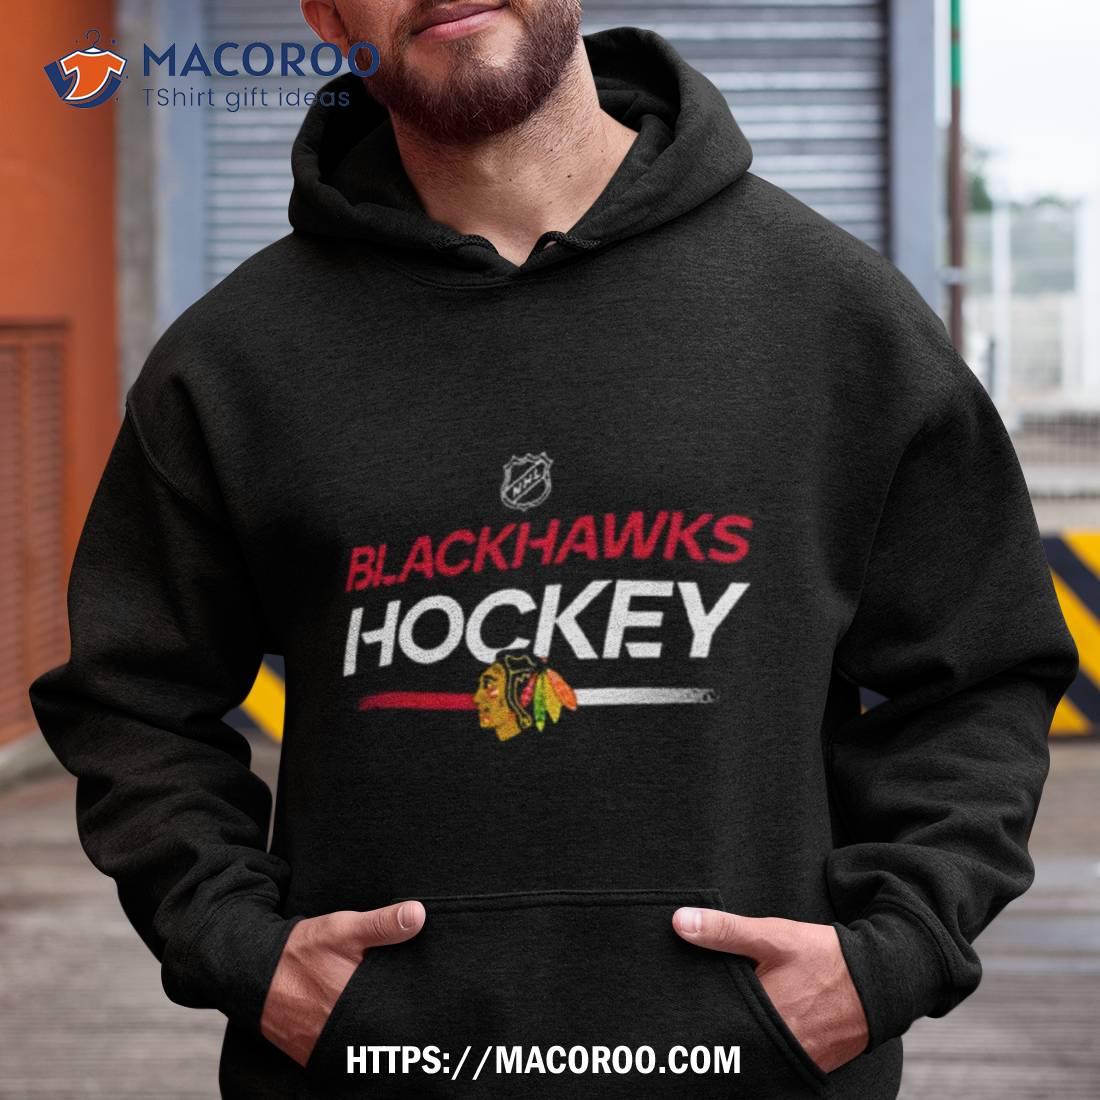 Chicago Blackhawks Gear, Blackhawks Jerseys, Chicago Blackhawks Clothing,  Blackhawks Pro Shop, Blackhawks Hockey Apparel